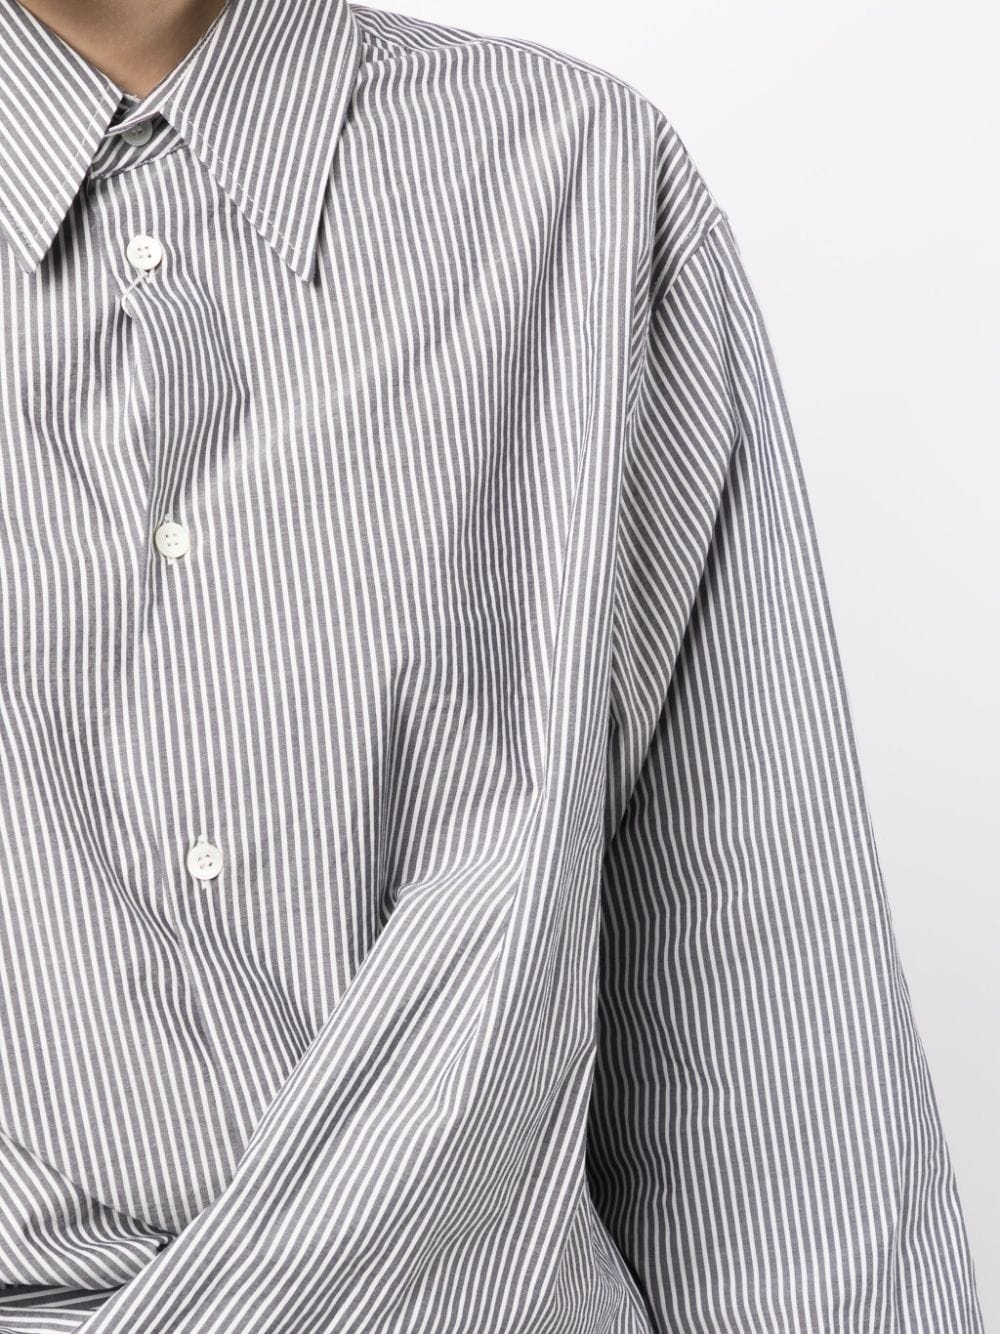 MM6 Maison Margiela twist-detail striped cotton shirt | REVERSIBLE